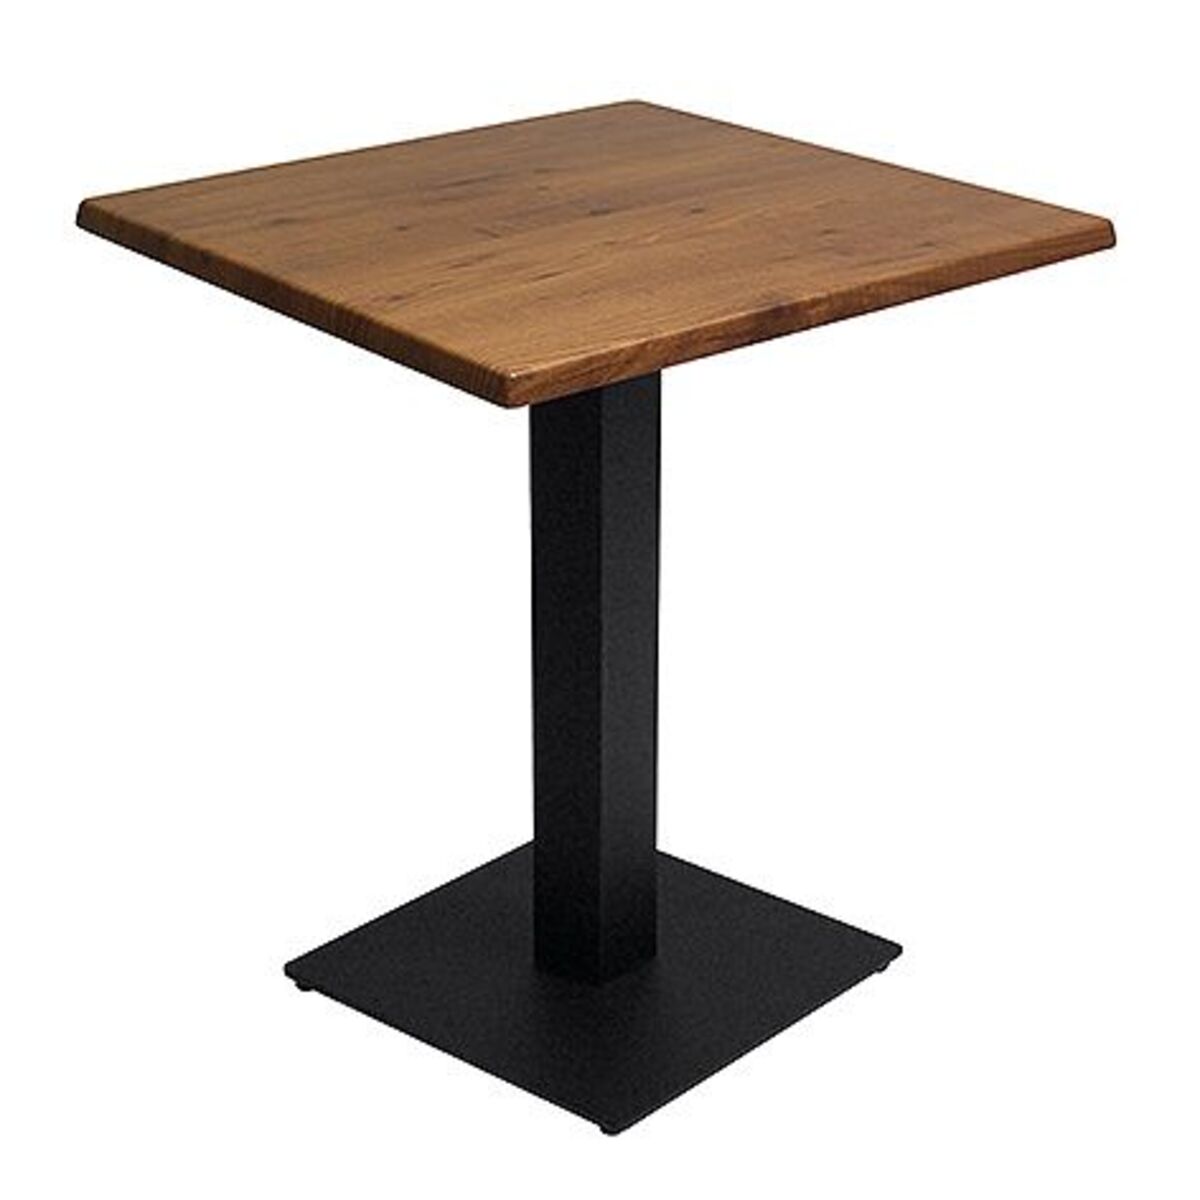 Table intérieure pied noir base carrée & plateau werzalit pin 60x60 cm